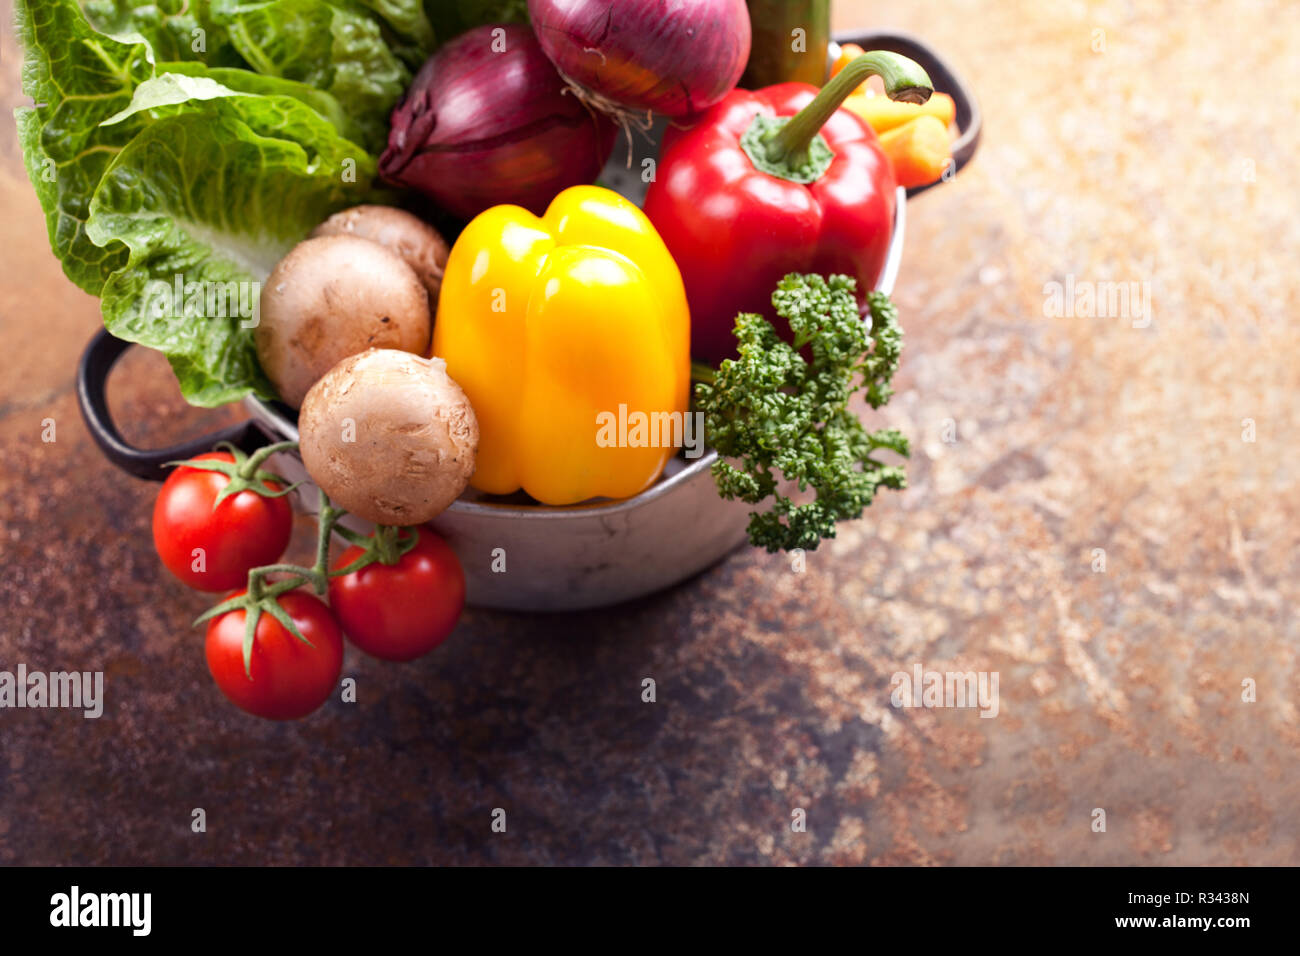 healthy vegetarian ingredients - vegetables Stock Photo